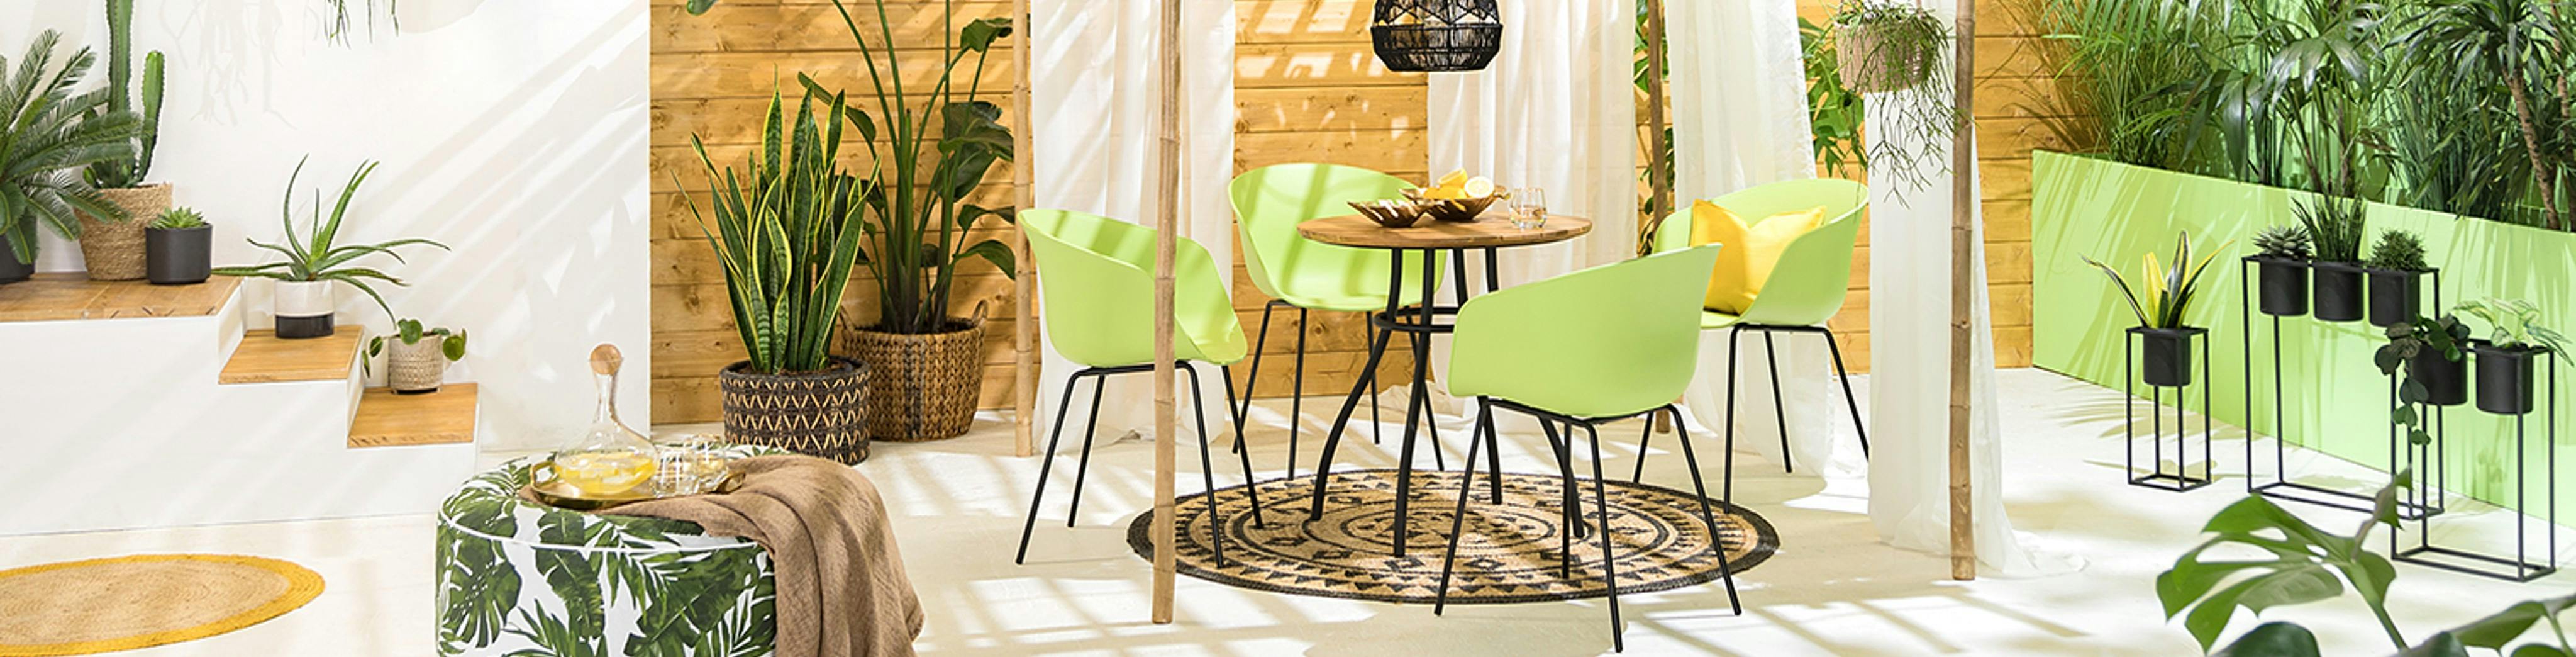 Grüne Gartenstühle aus Kunststoff auf einer geräumigen Terrasse mit vielen Pflanzen